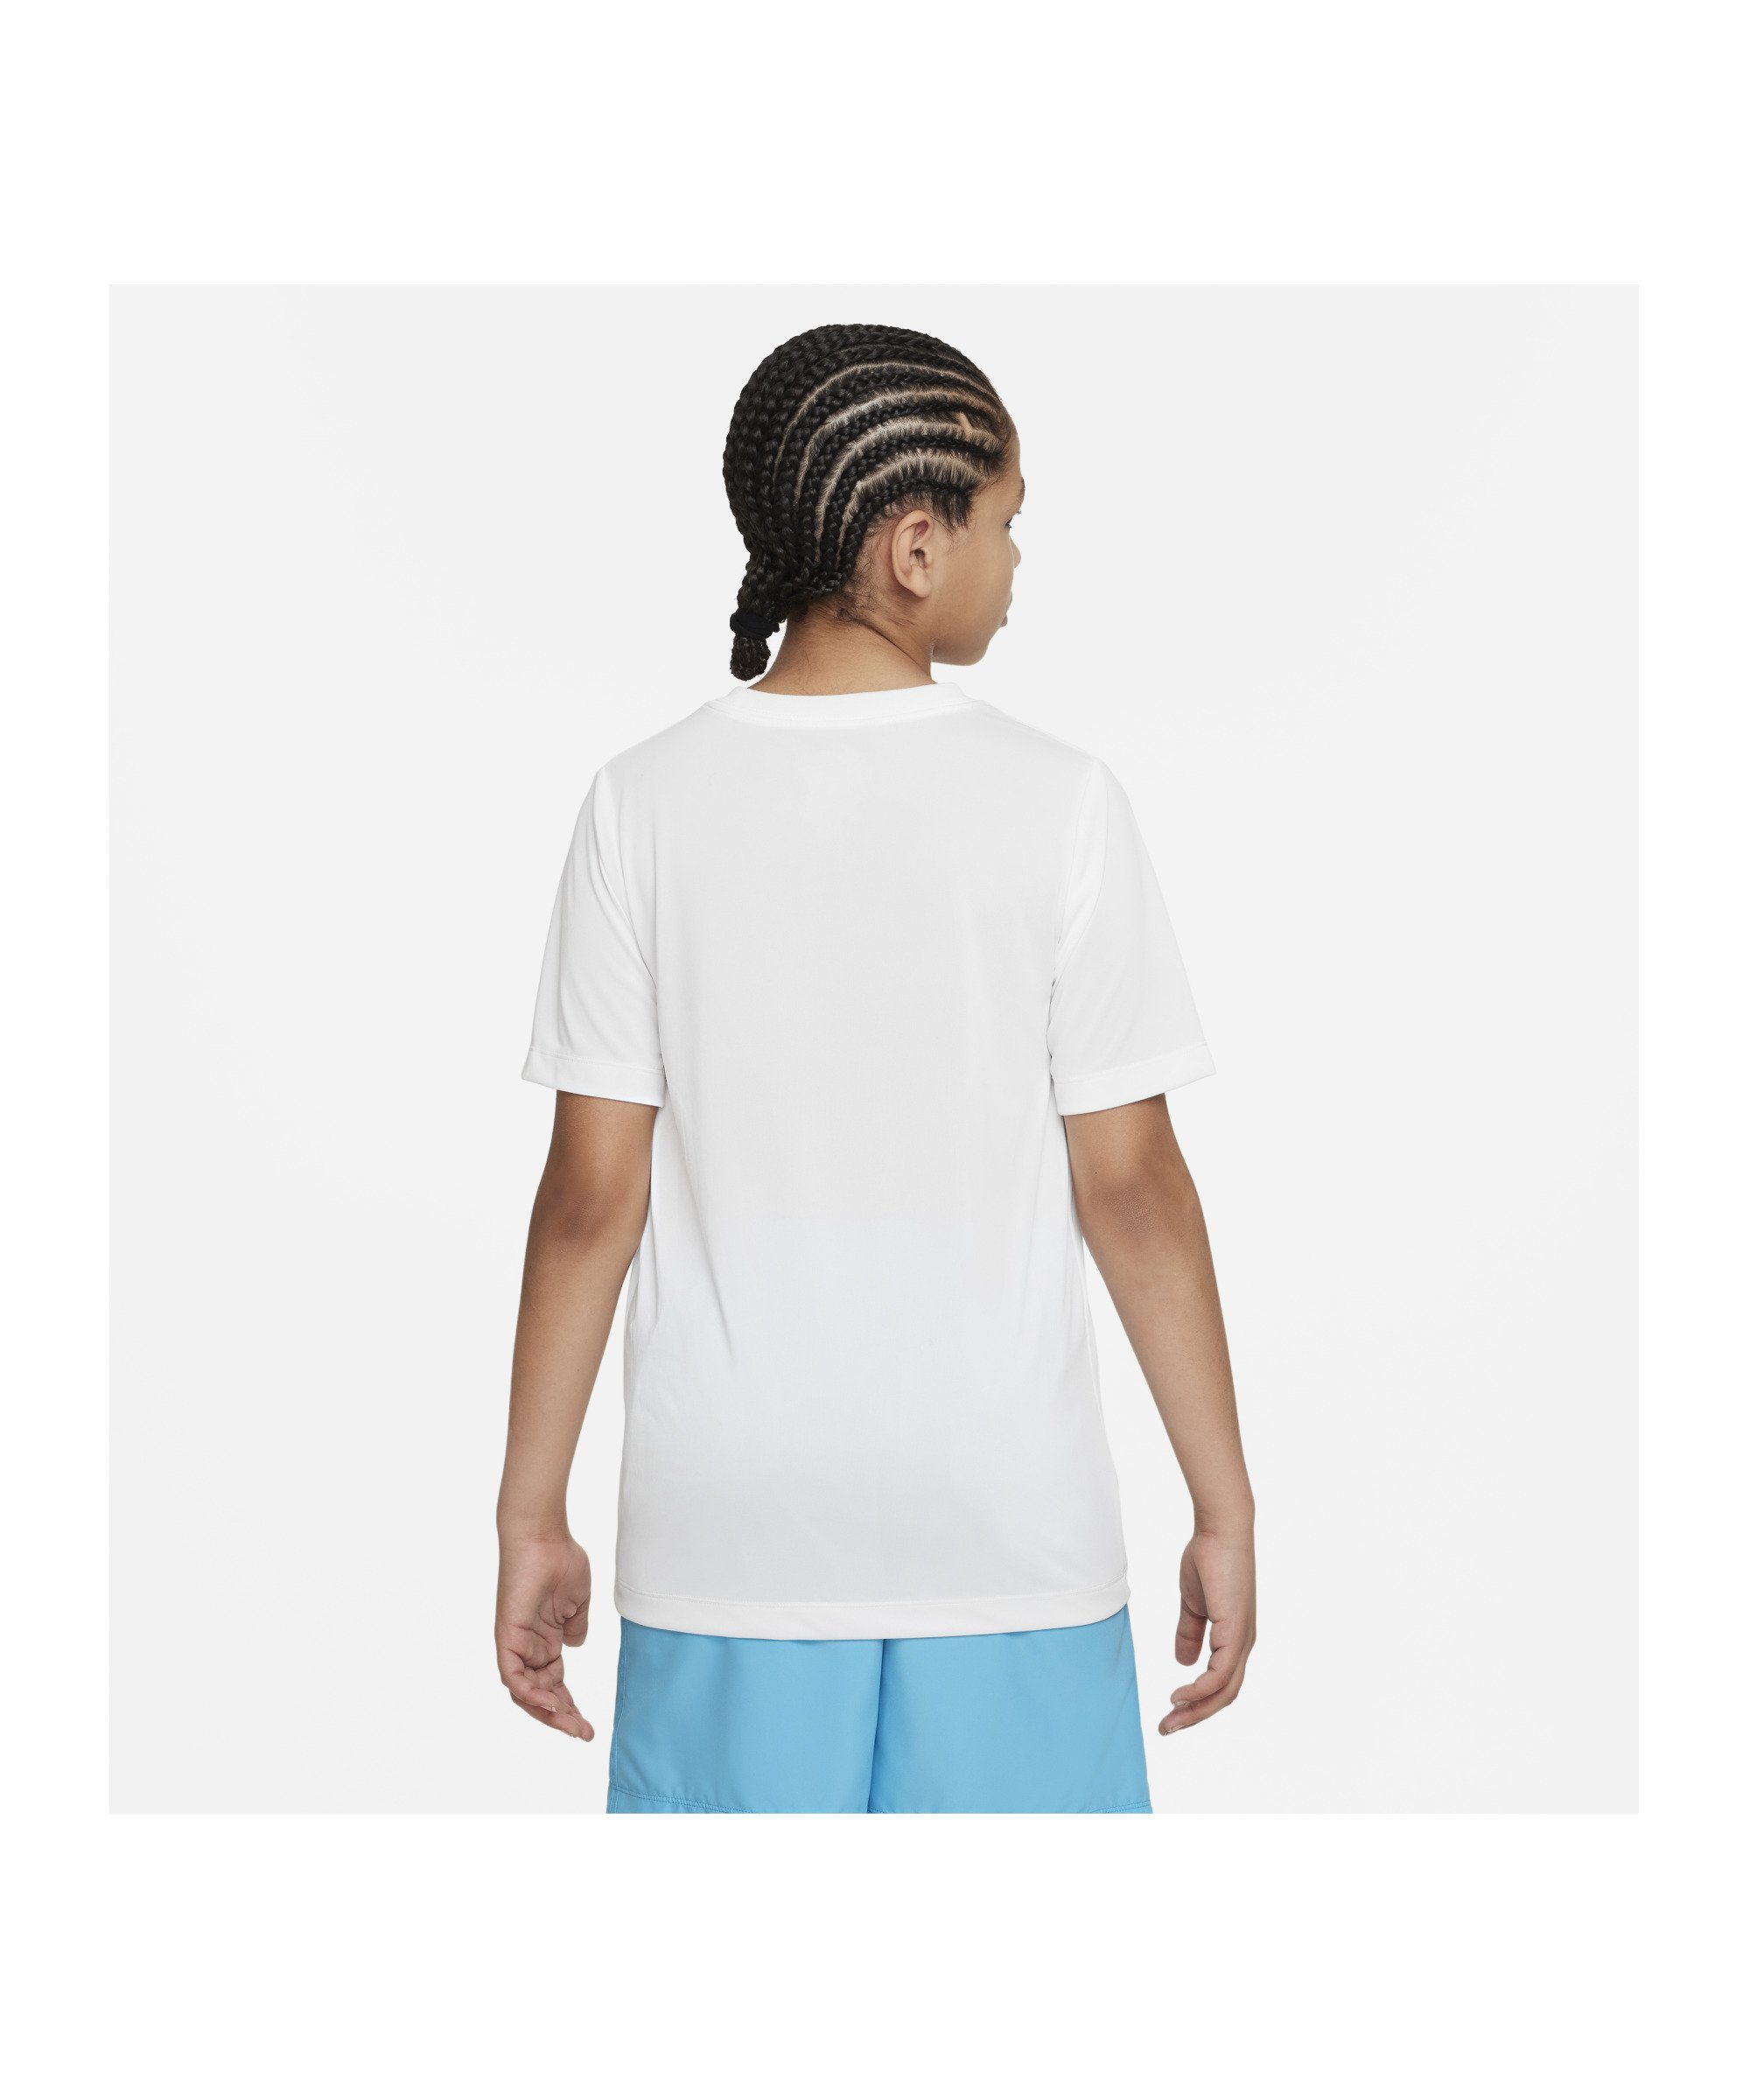 Nike Laufshirt Training T-Shirt weiss Kids default